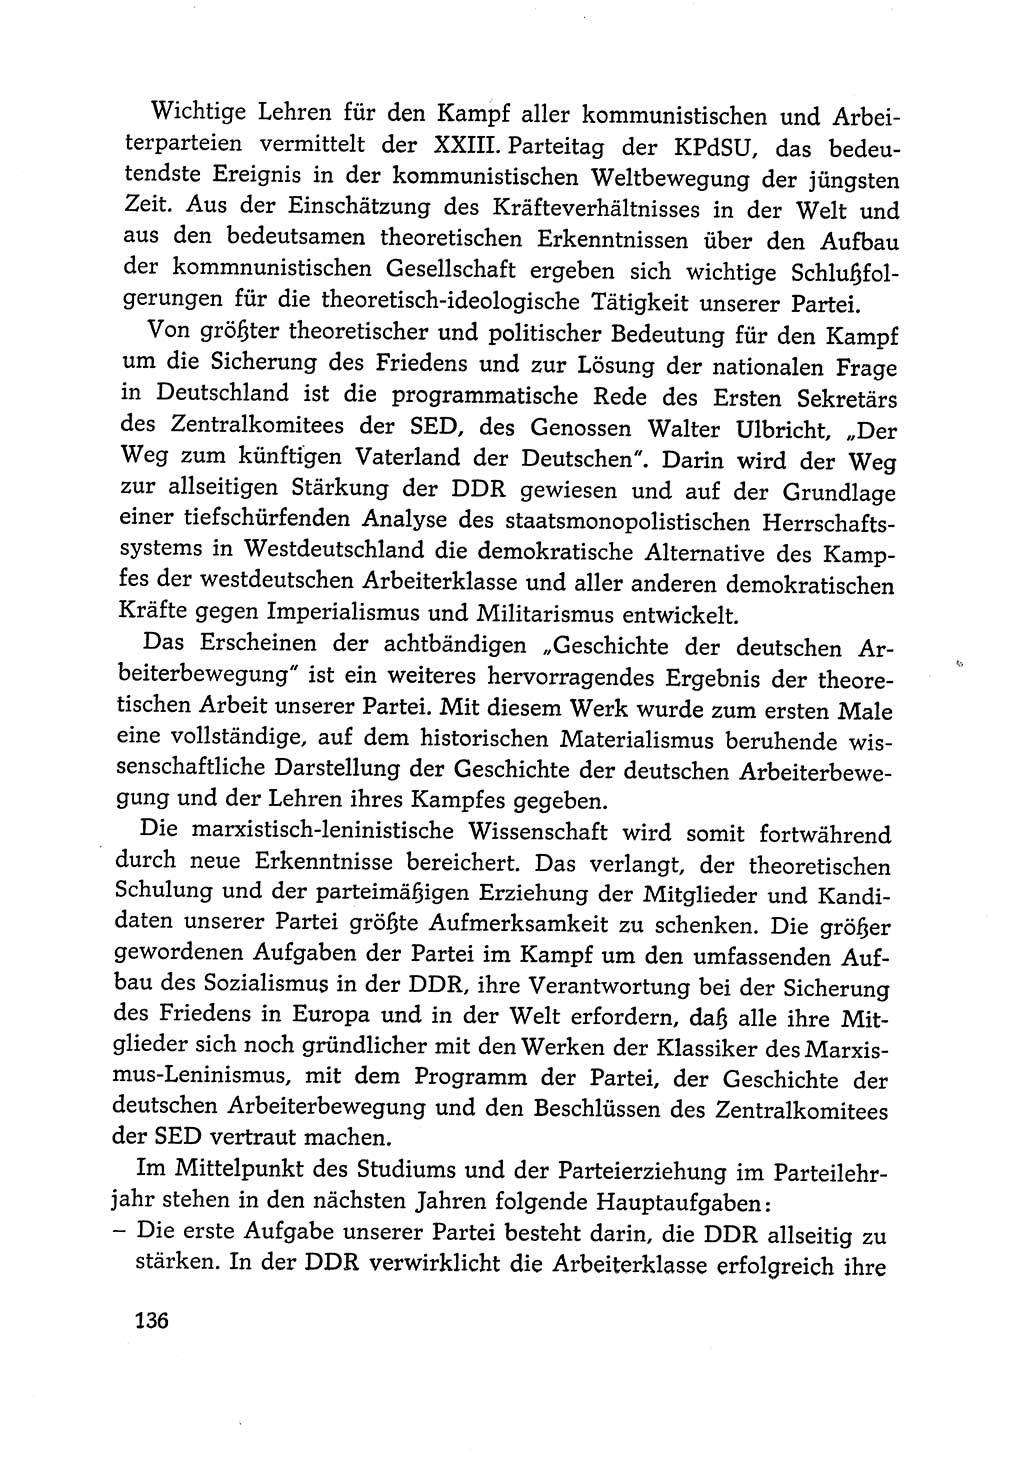 Dokumente der Sozialistischen Einheitspartei Deutschlands (SED) [Deutsche Demokratische Republik (DDR)] 1966-1967, Seite 136 (Dok. SED DDR 1966-1967, S. 136)